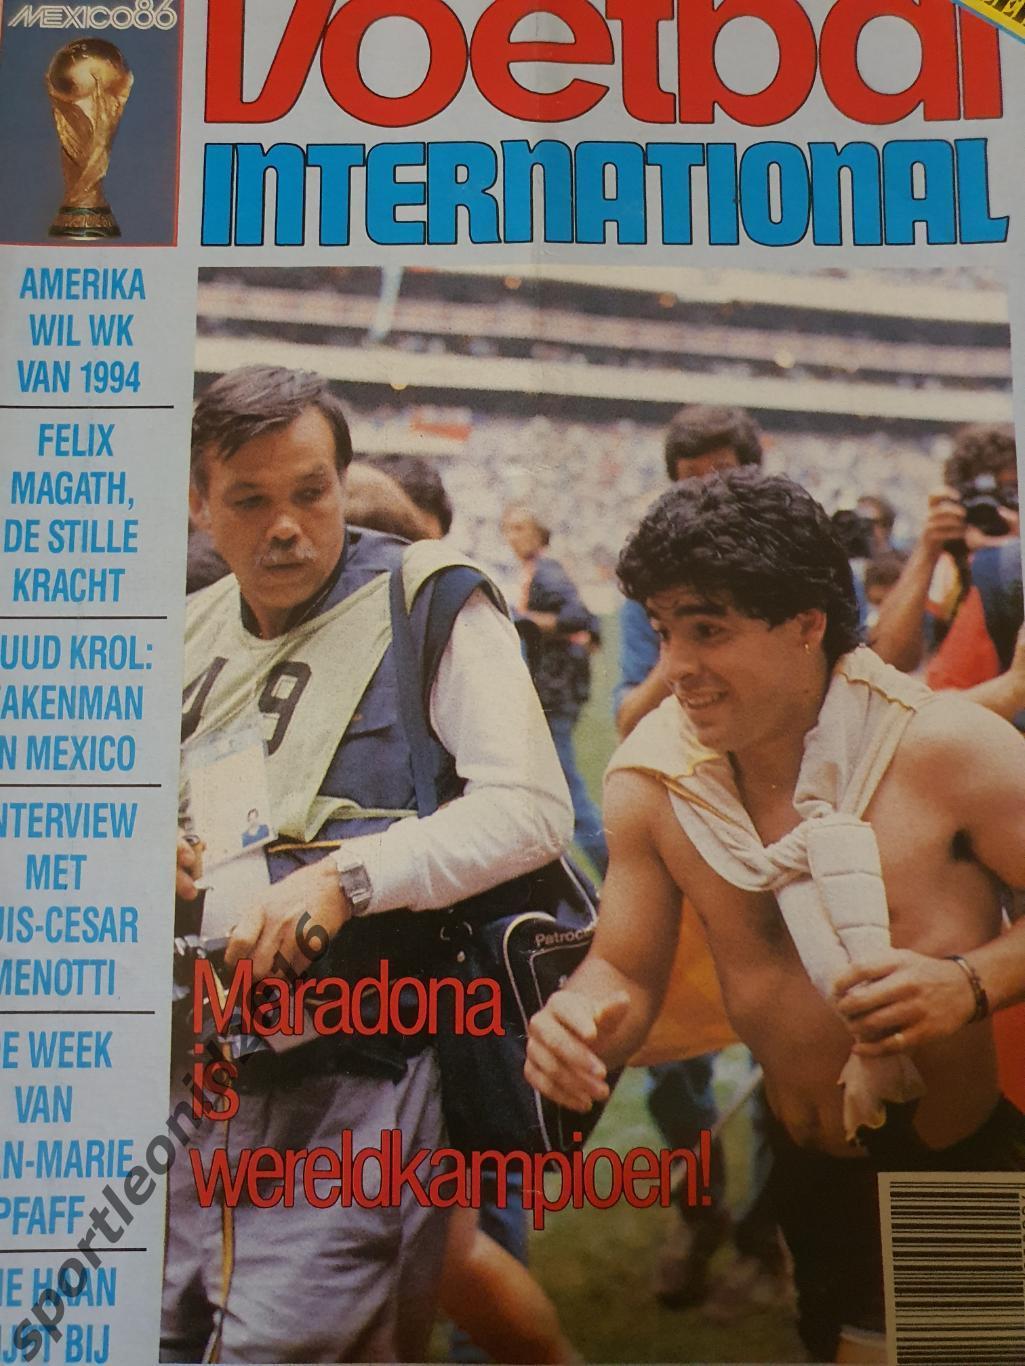 Voetbal International 1986.3 топ выпуска.Итоговые к ЧМ-86.3